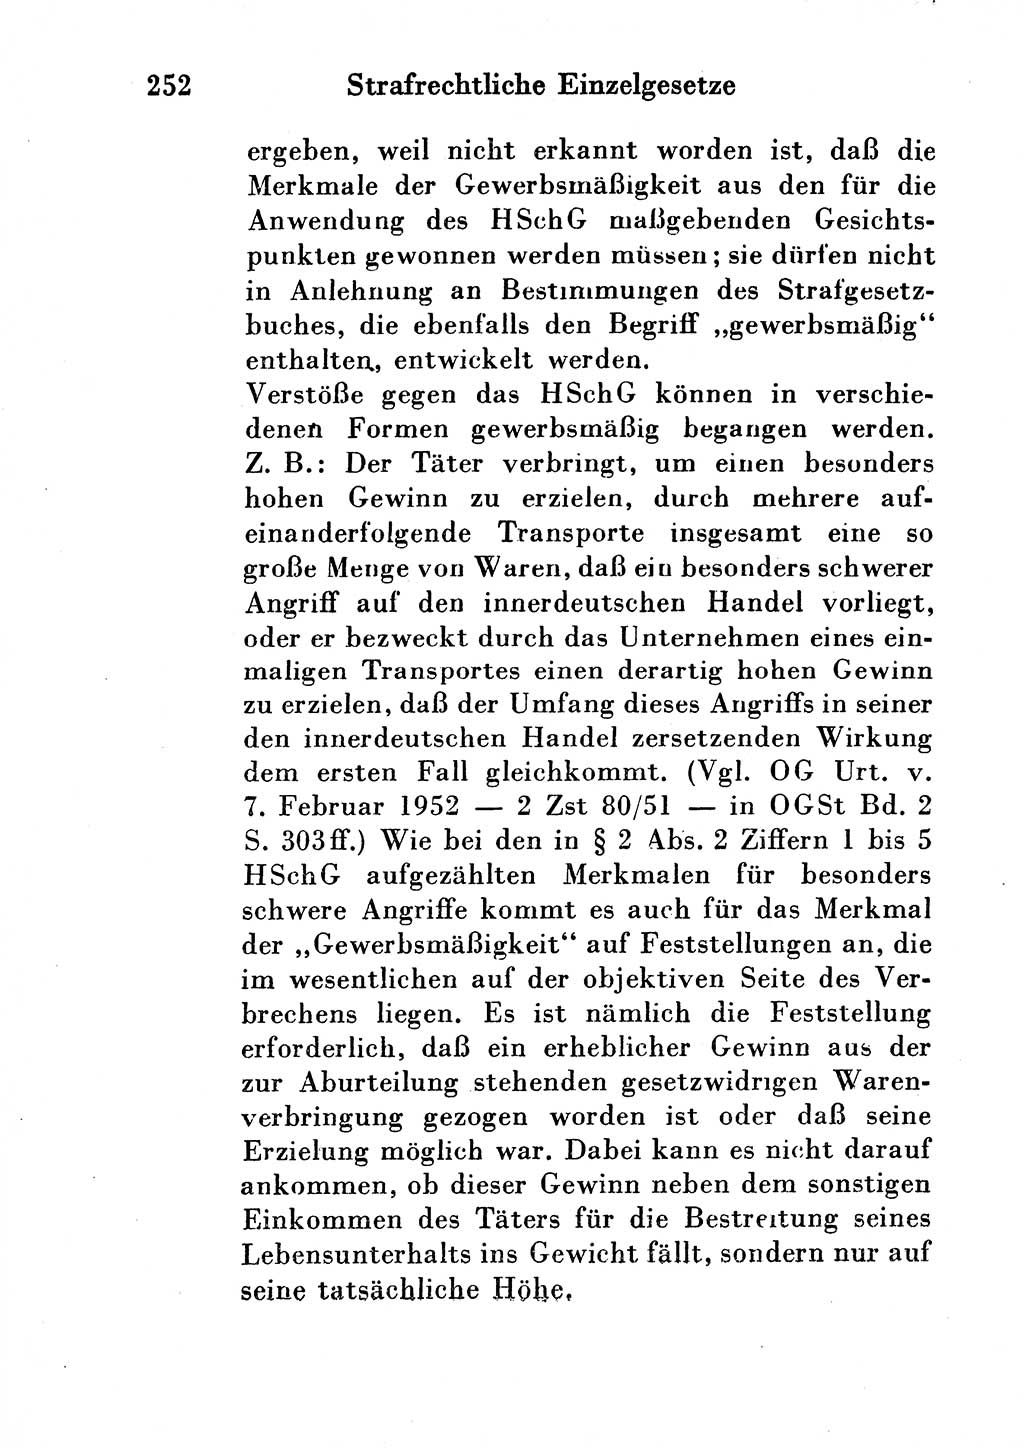 Strafgesetzbuch (StGB) und andere Strafgesetze [Deutsche Demokratische Republik (DDR)] 1954, Seite 252 (StGB Strafges. DDR 1954, S. 252)